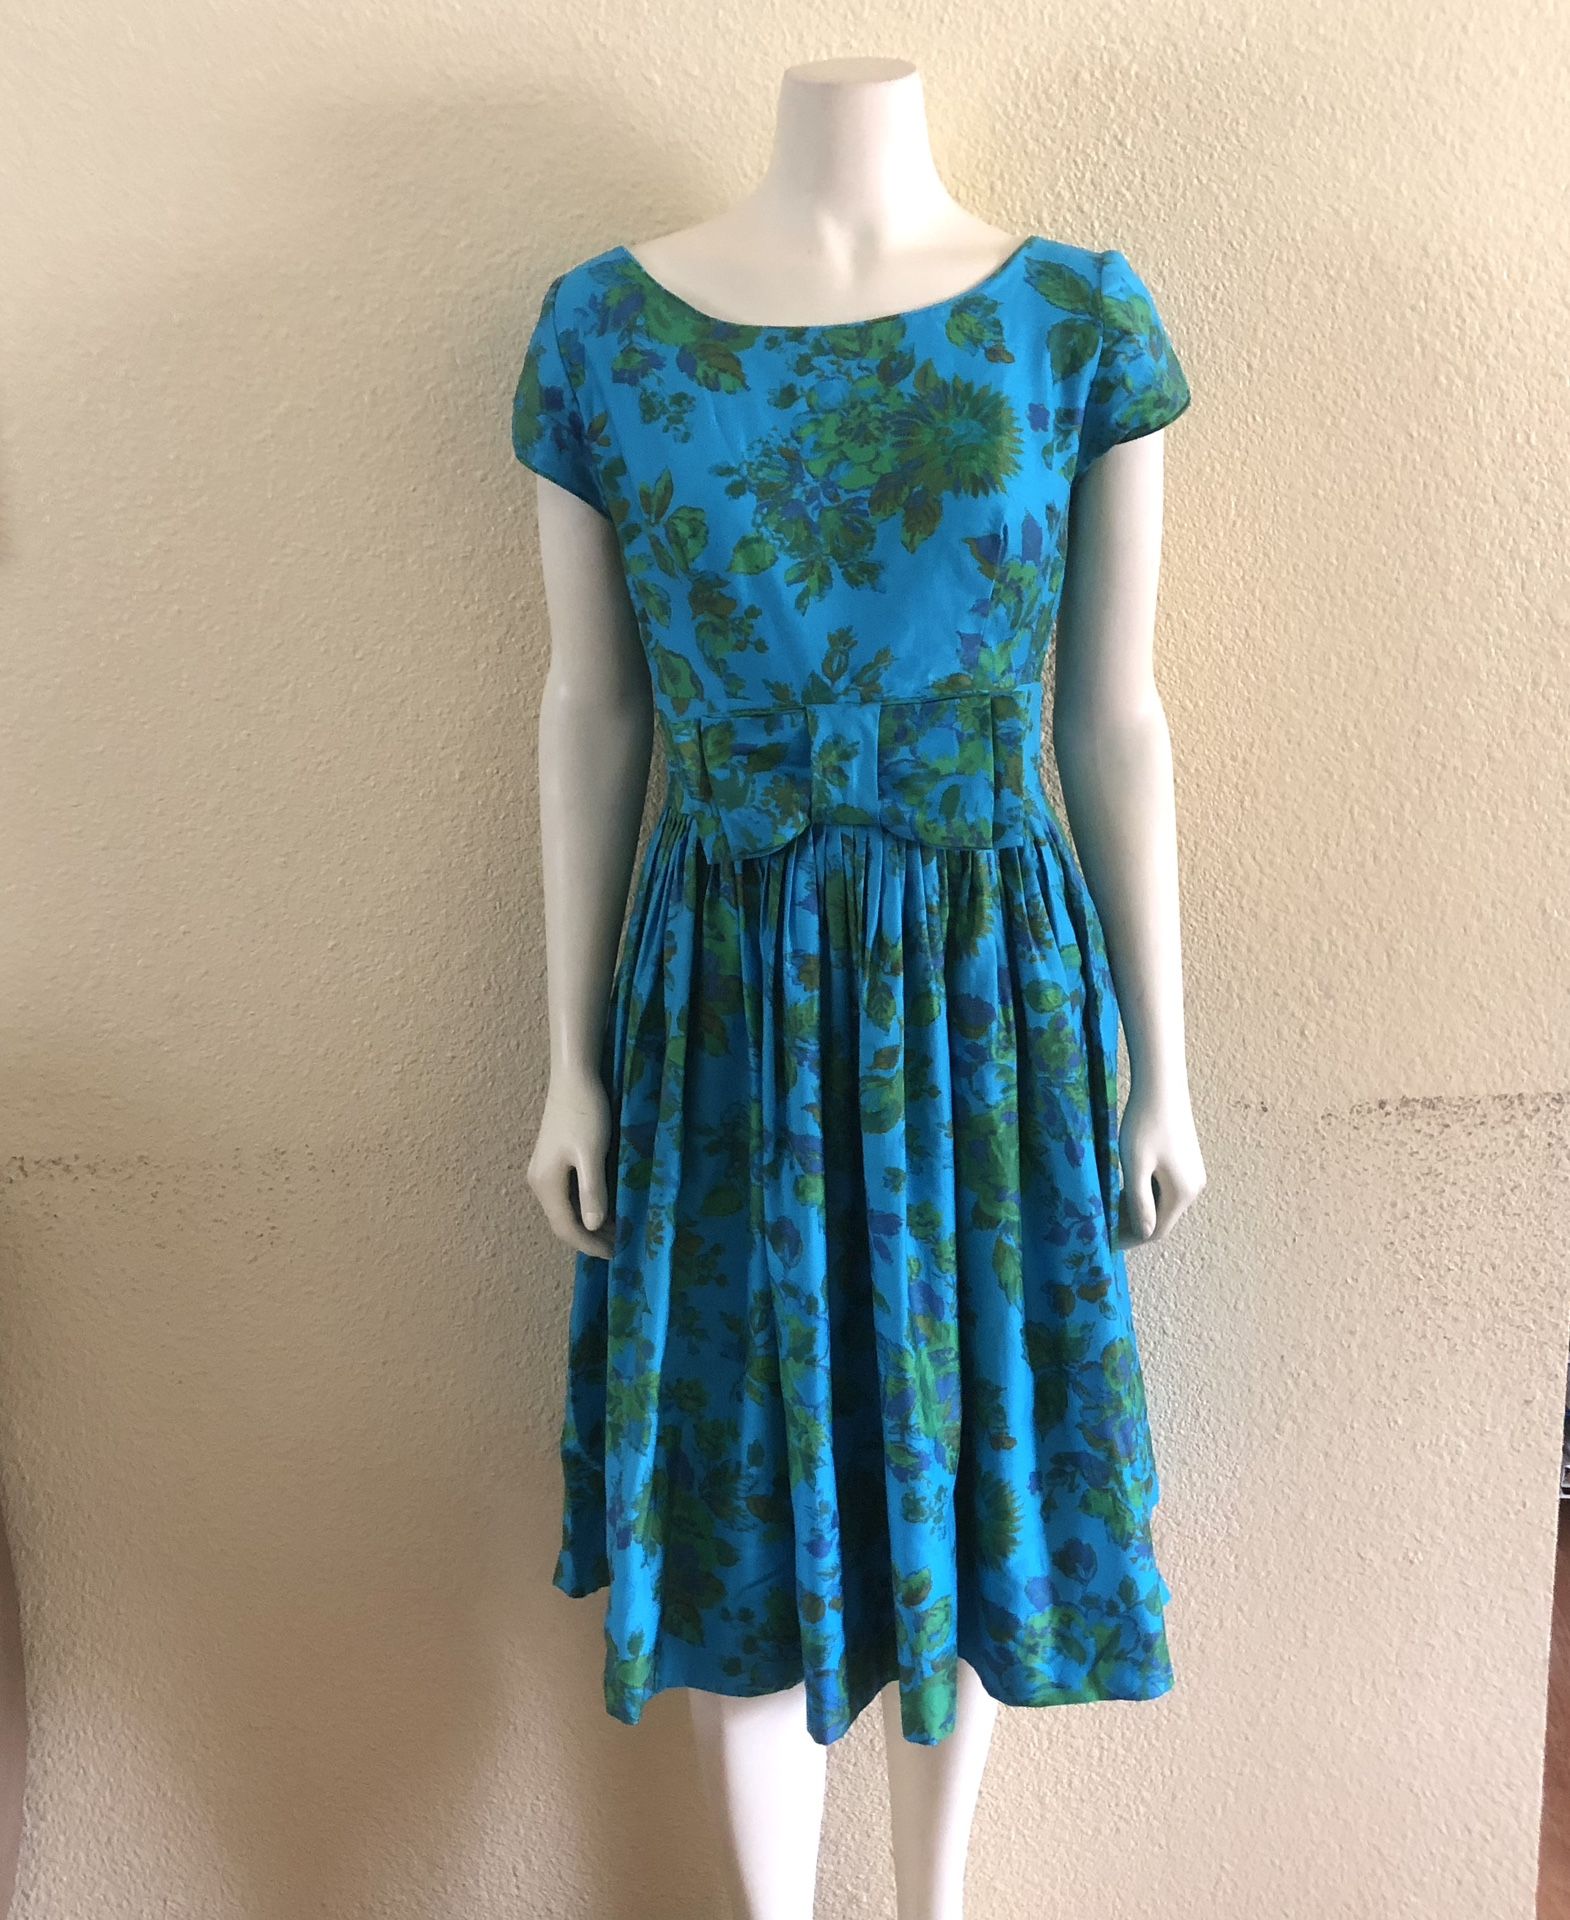 Joan Miller  Juniors  Vintage  Sun Dress Blue Floral Bow Full Skirt Size 11/12